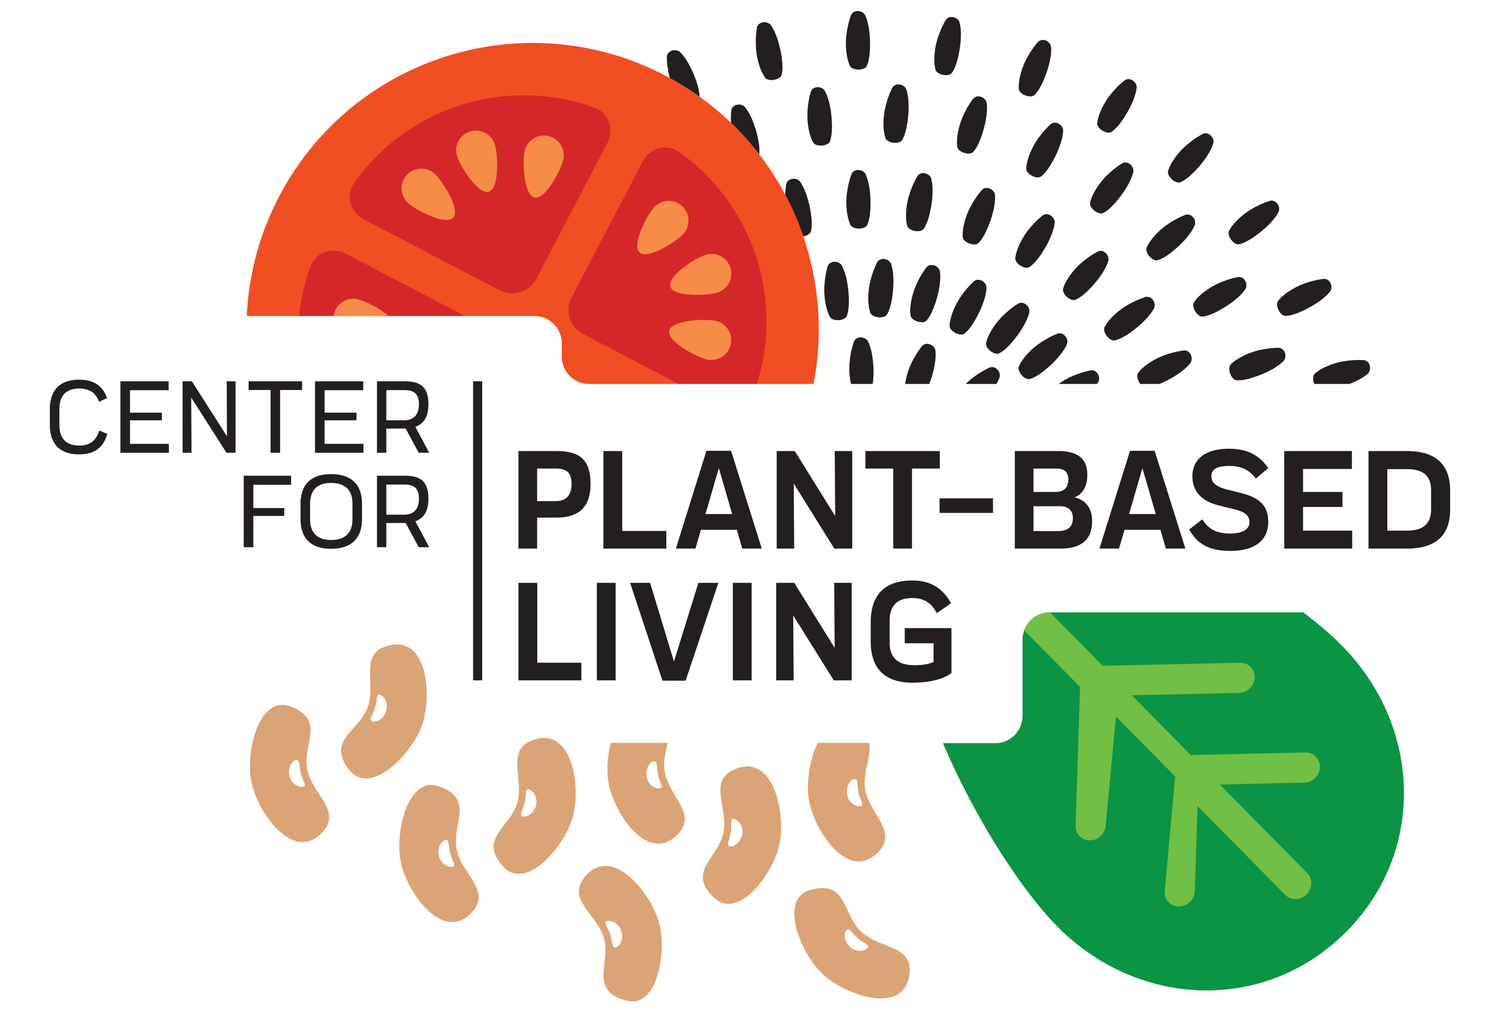 Center for Plant-Based Living